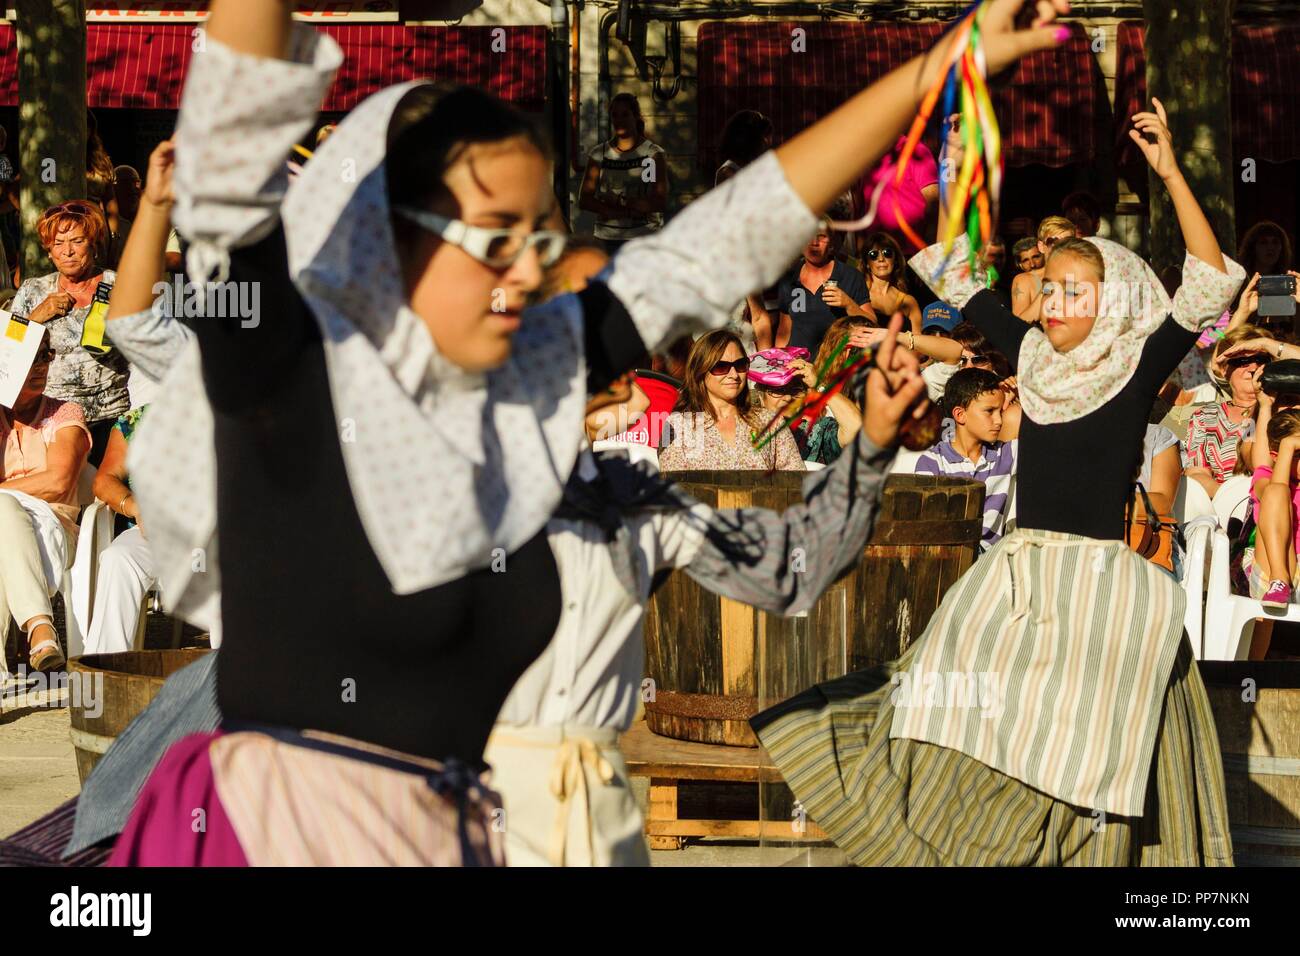 baile de Boleros durante el concurso de pisadores de uva, fiestas de Es Vermar, Binissalem, Mallorca, islas baleares, Spain, europa. Stock Photo